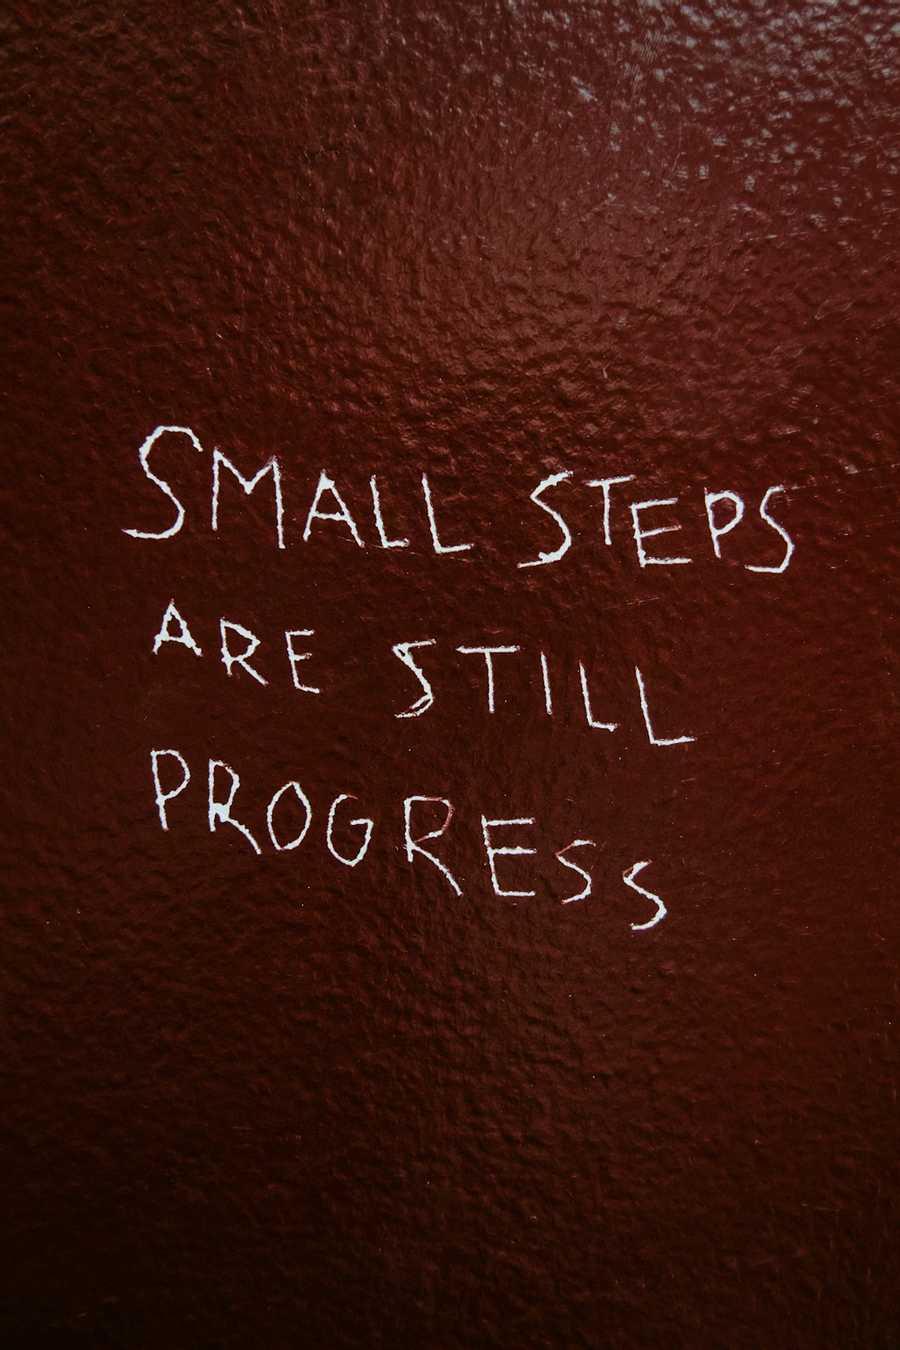 Take Very Small Steps